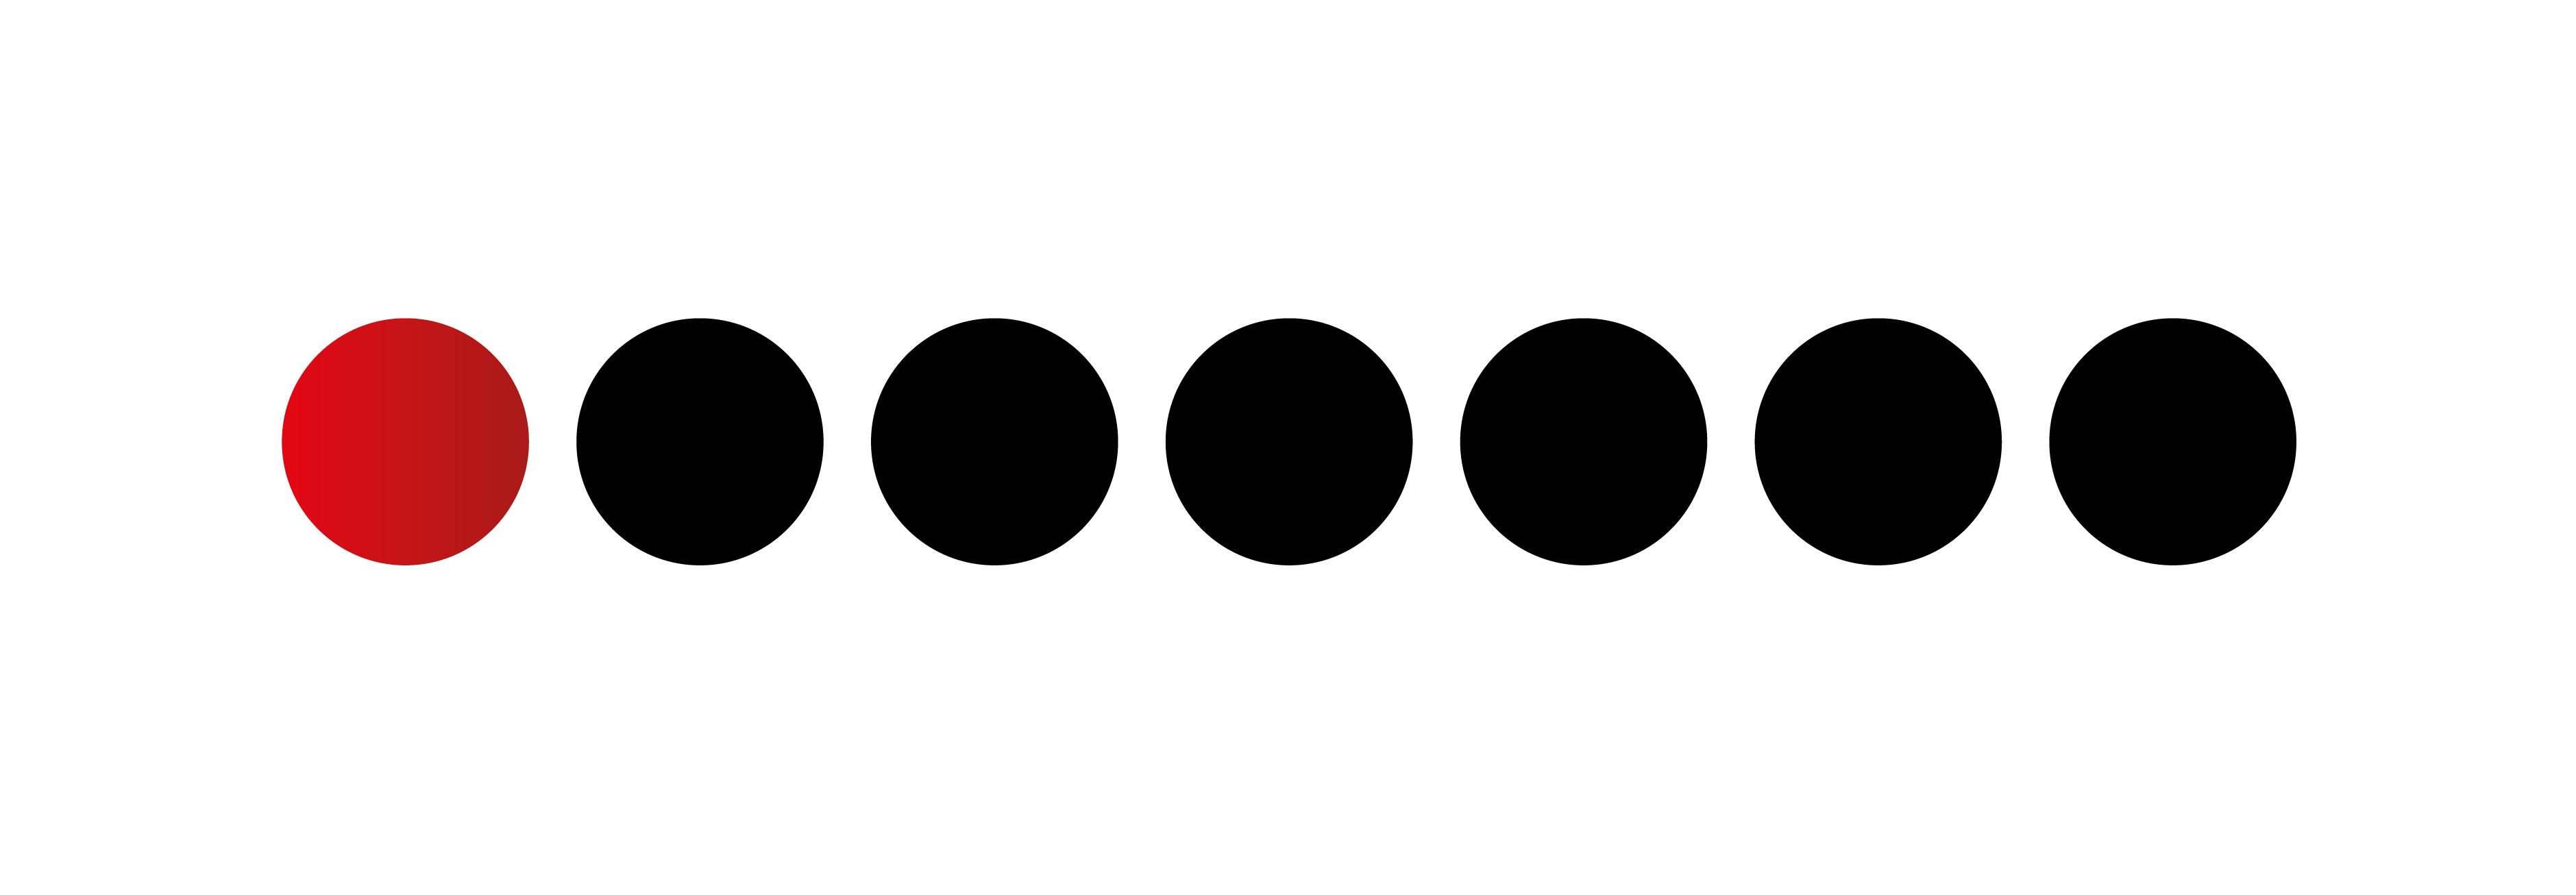 Logo epedago